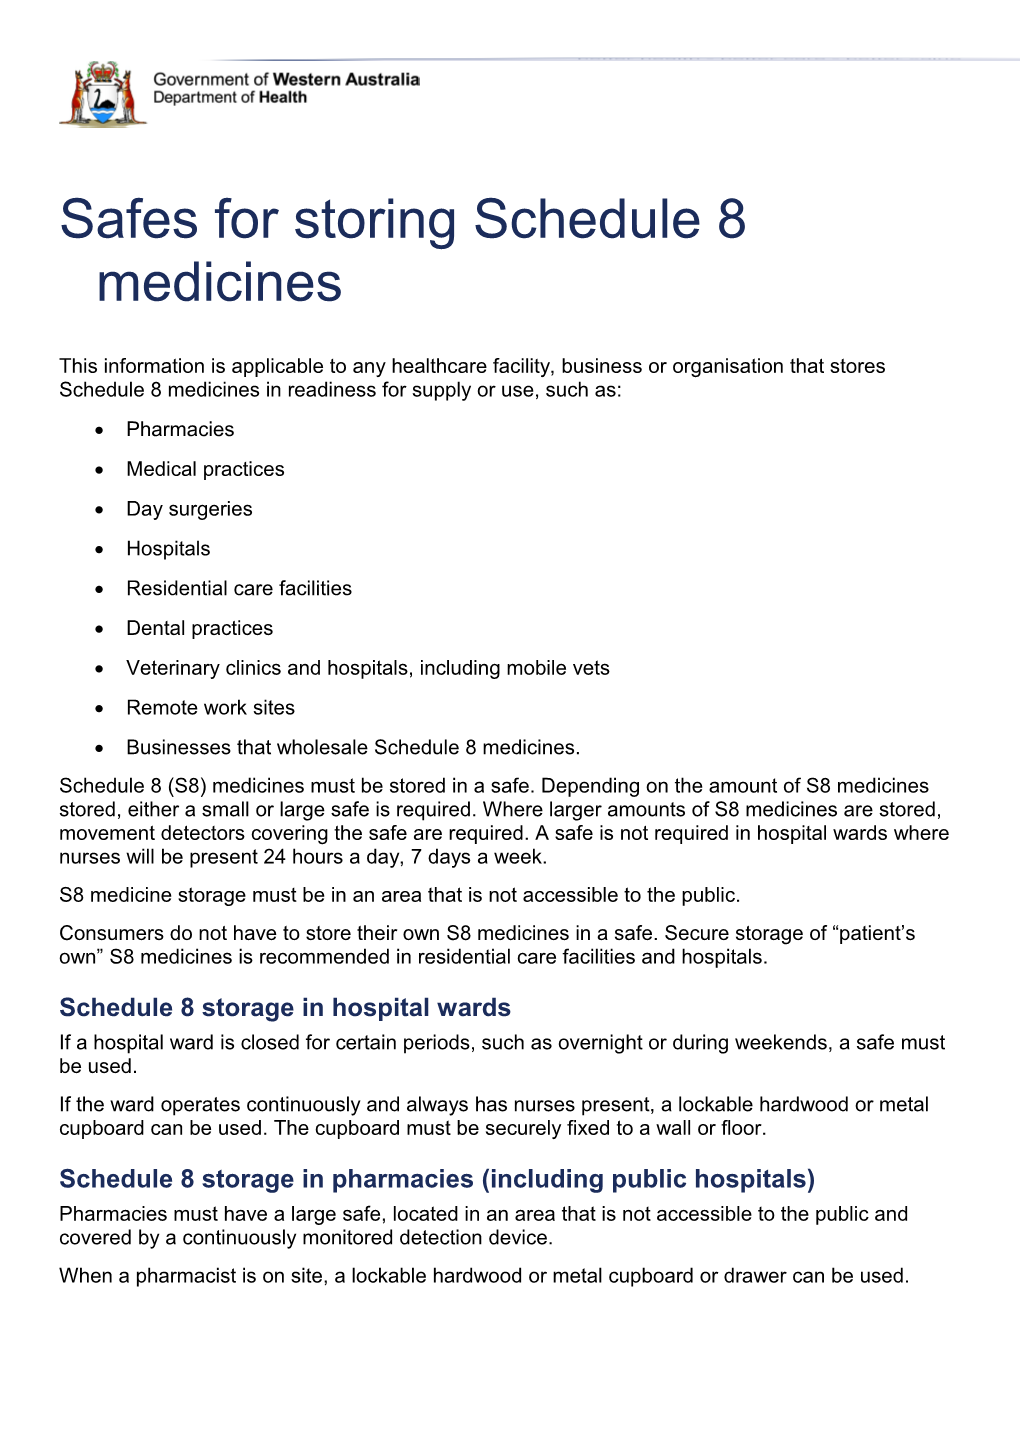 Safes for Storing Schedule 8 Medicines